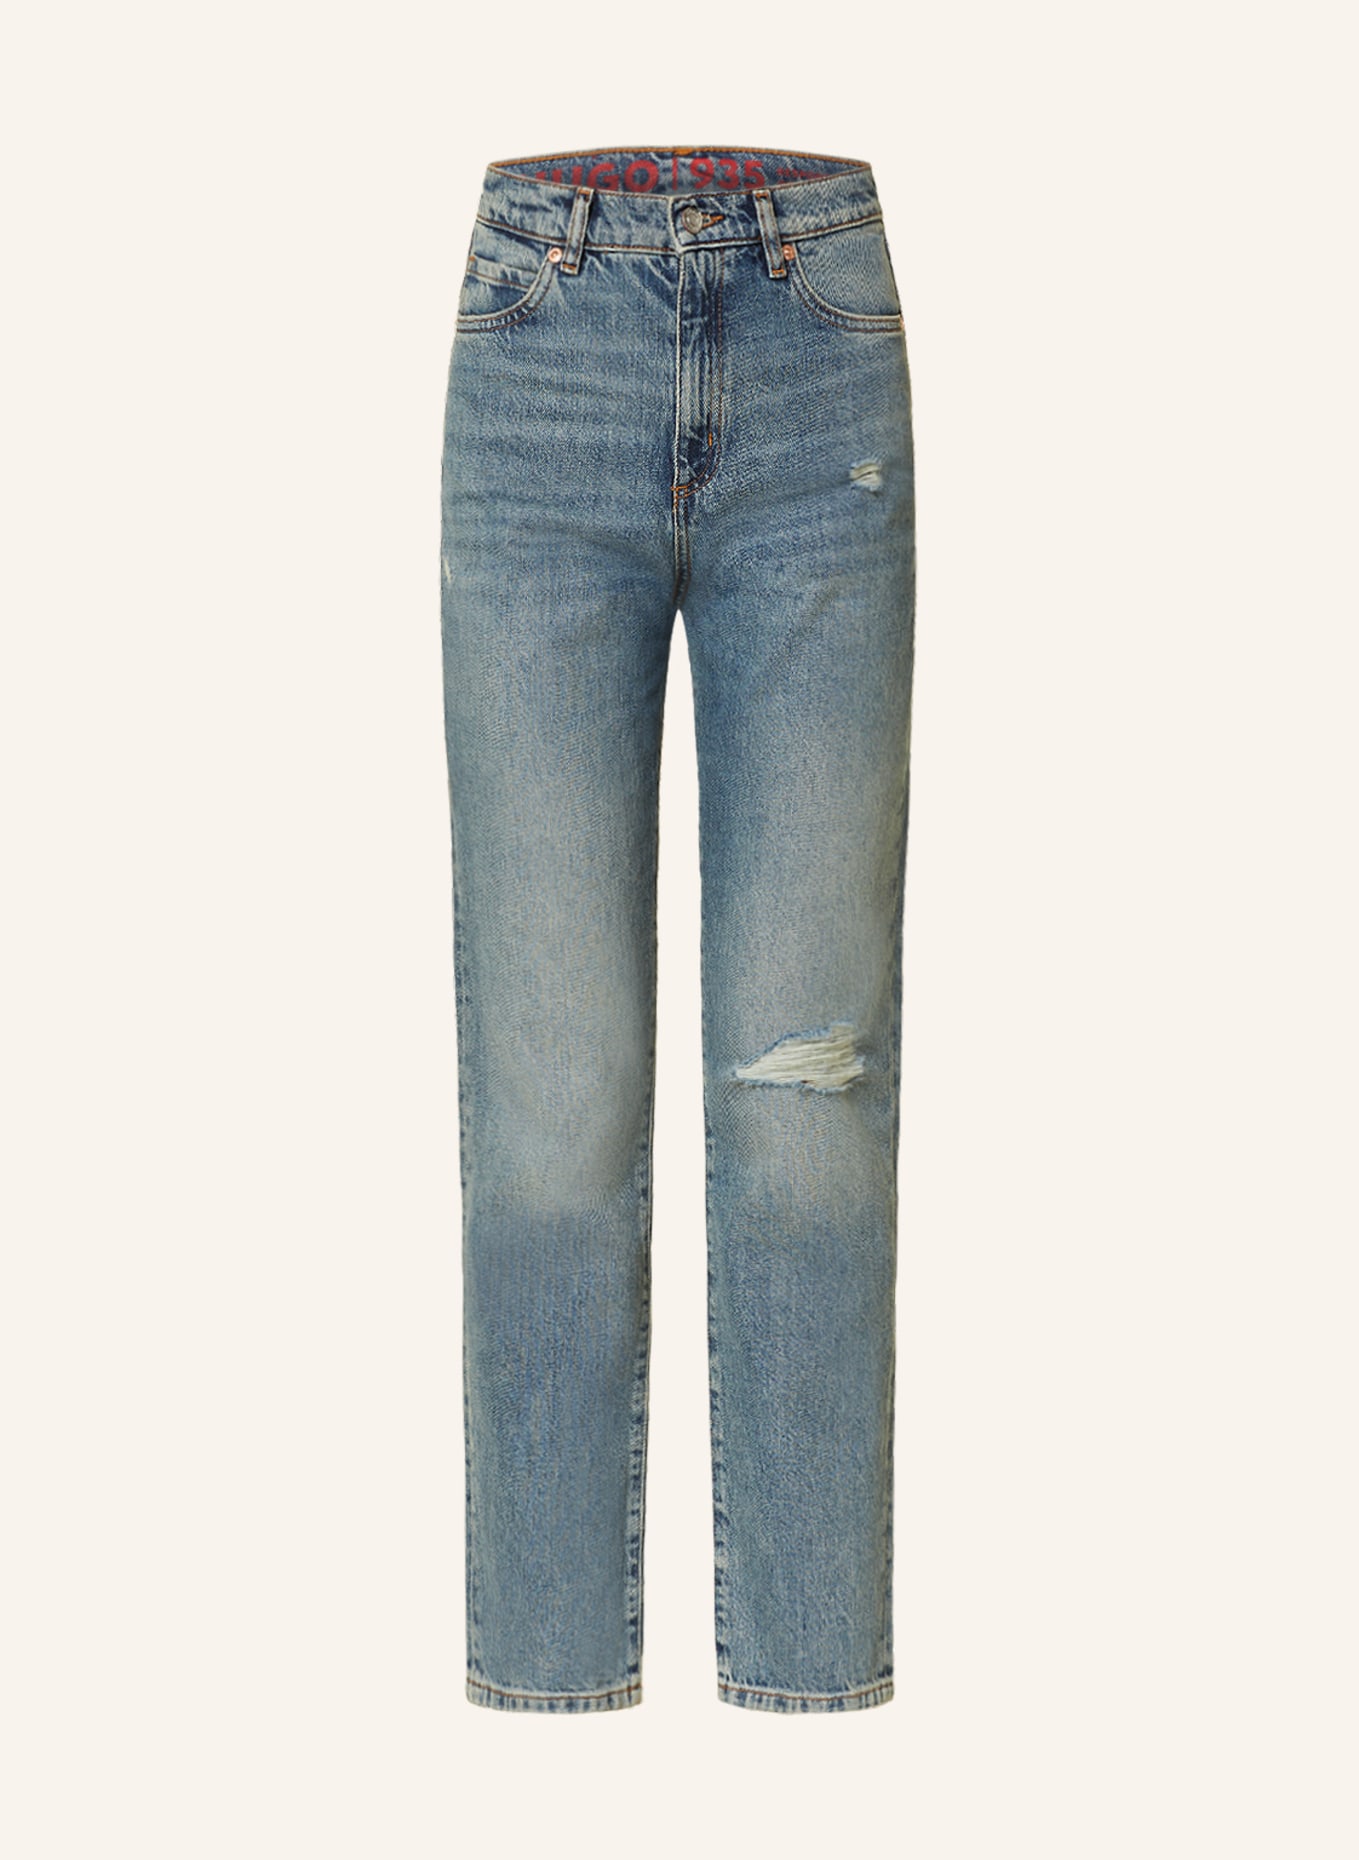 HUGO Destroyed jeans 935, Color: 425 MEDIUM BLUE (Image 1)